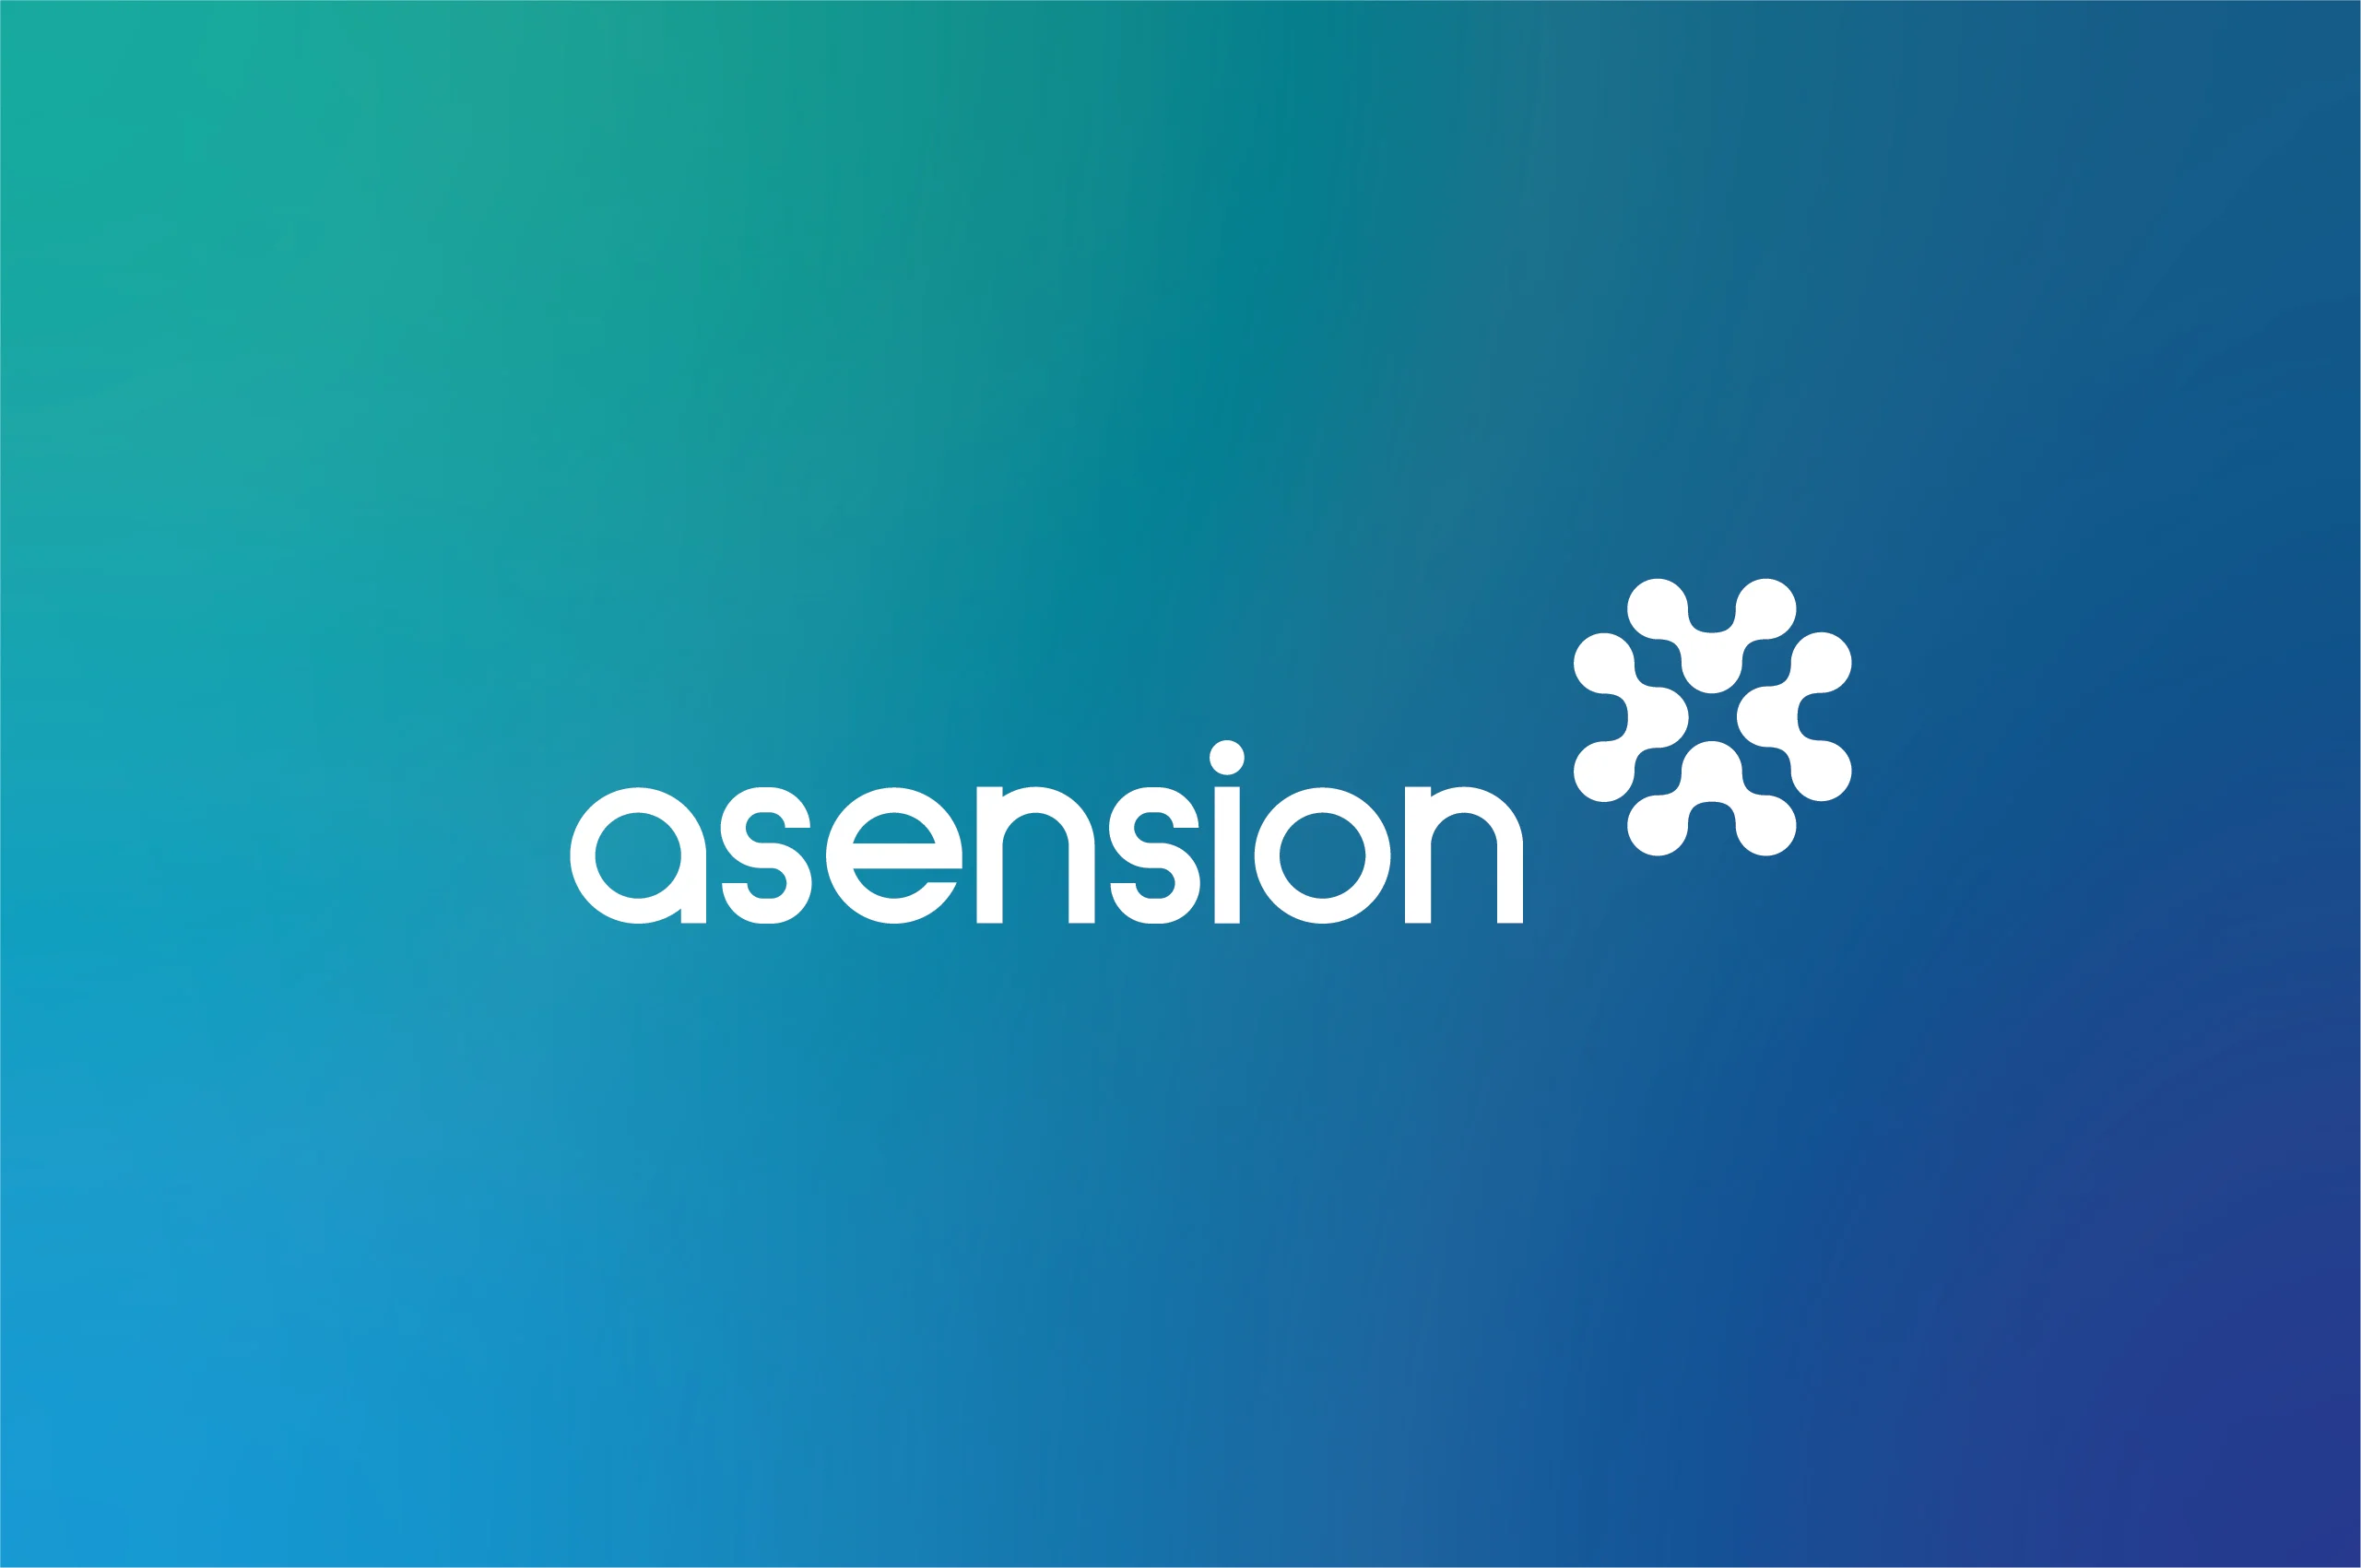 Asension Logo Identity